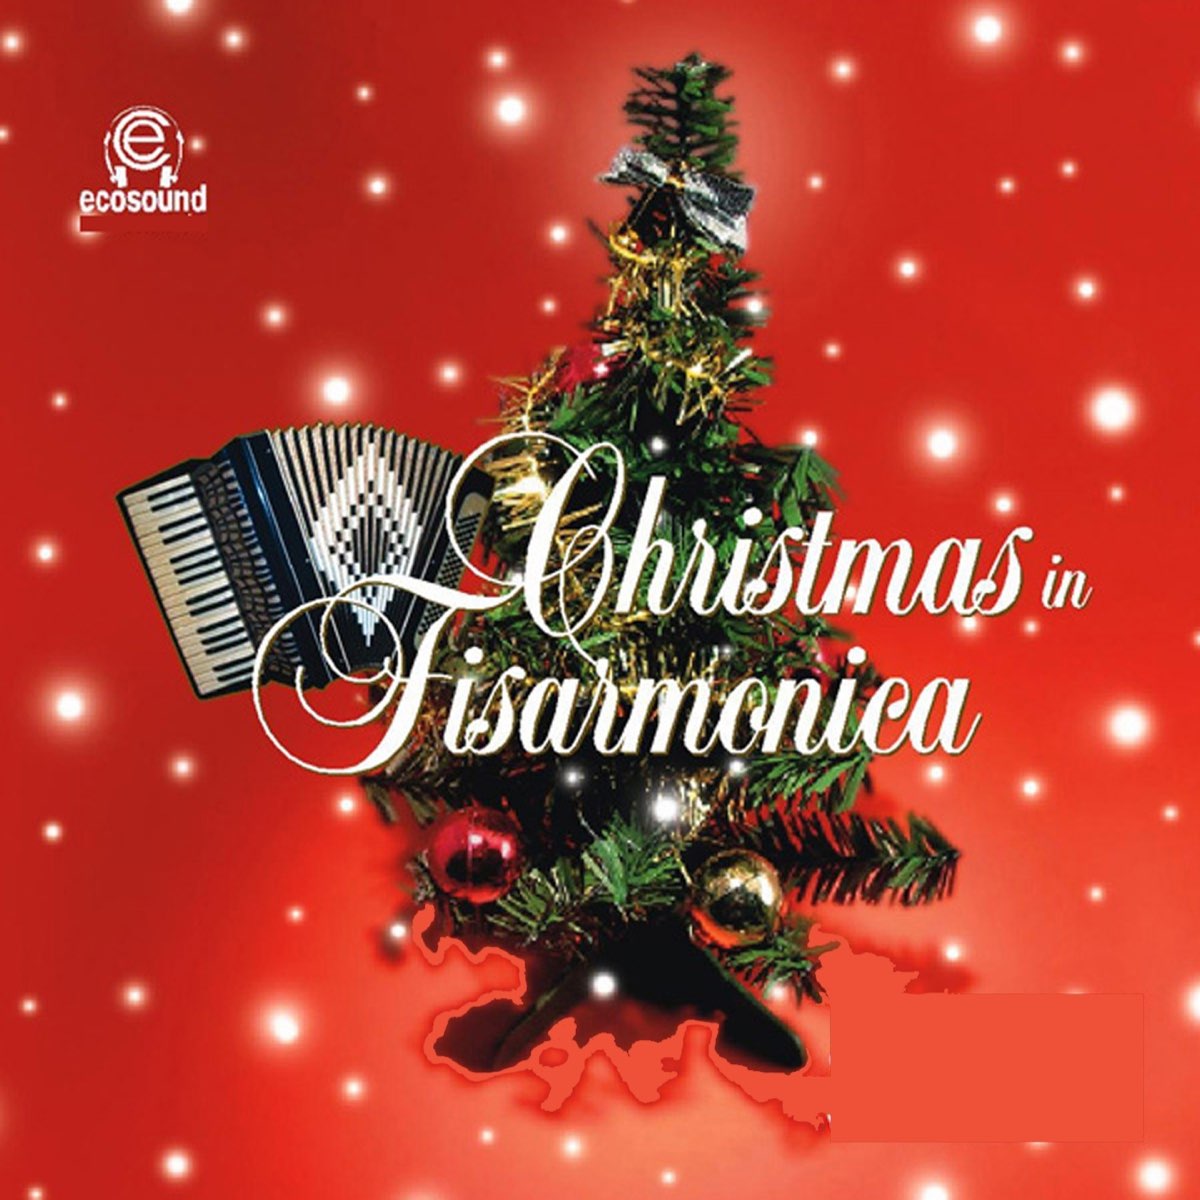 Christmas in fisarmonica (Ecosound musica di Natale) di Ecosound su Apple  Music